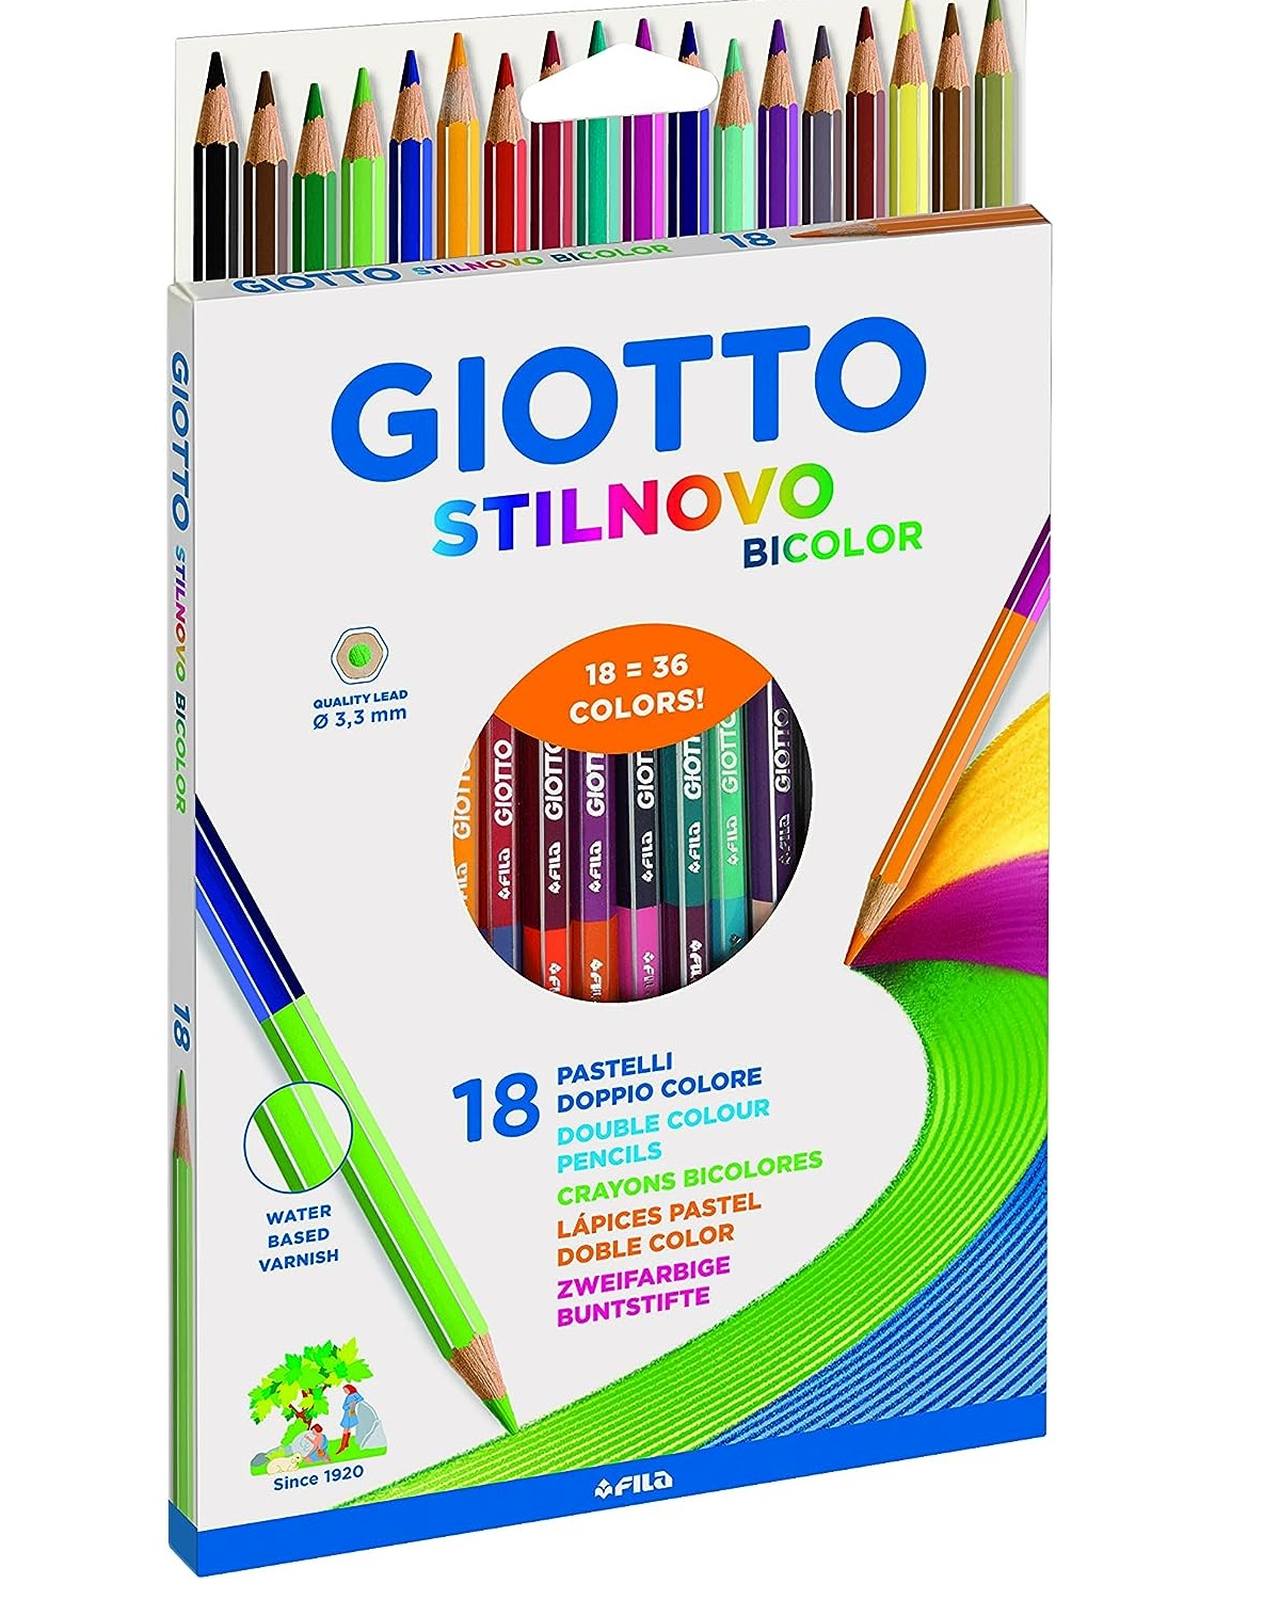 Giotto Stilnovo Bicolor pastello bicolor in un astuccio da 18 pastelli (36  colori)